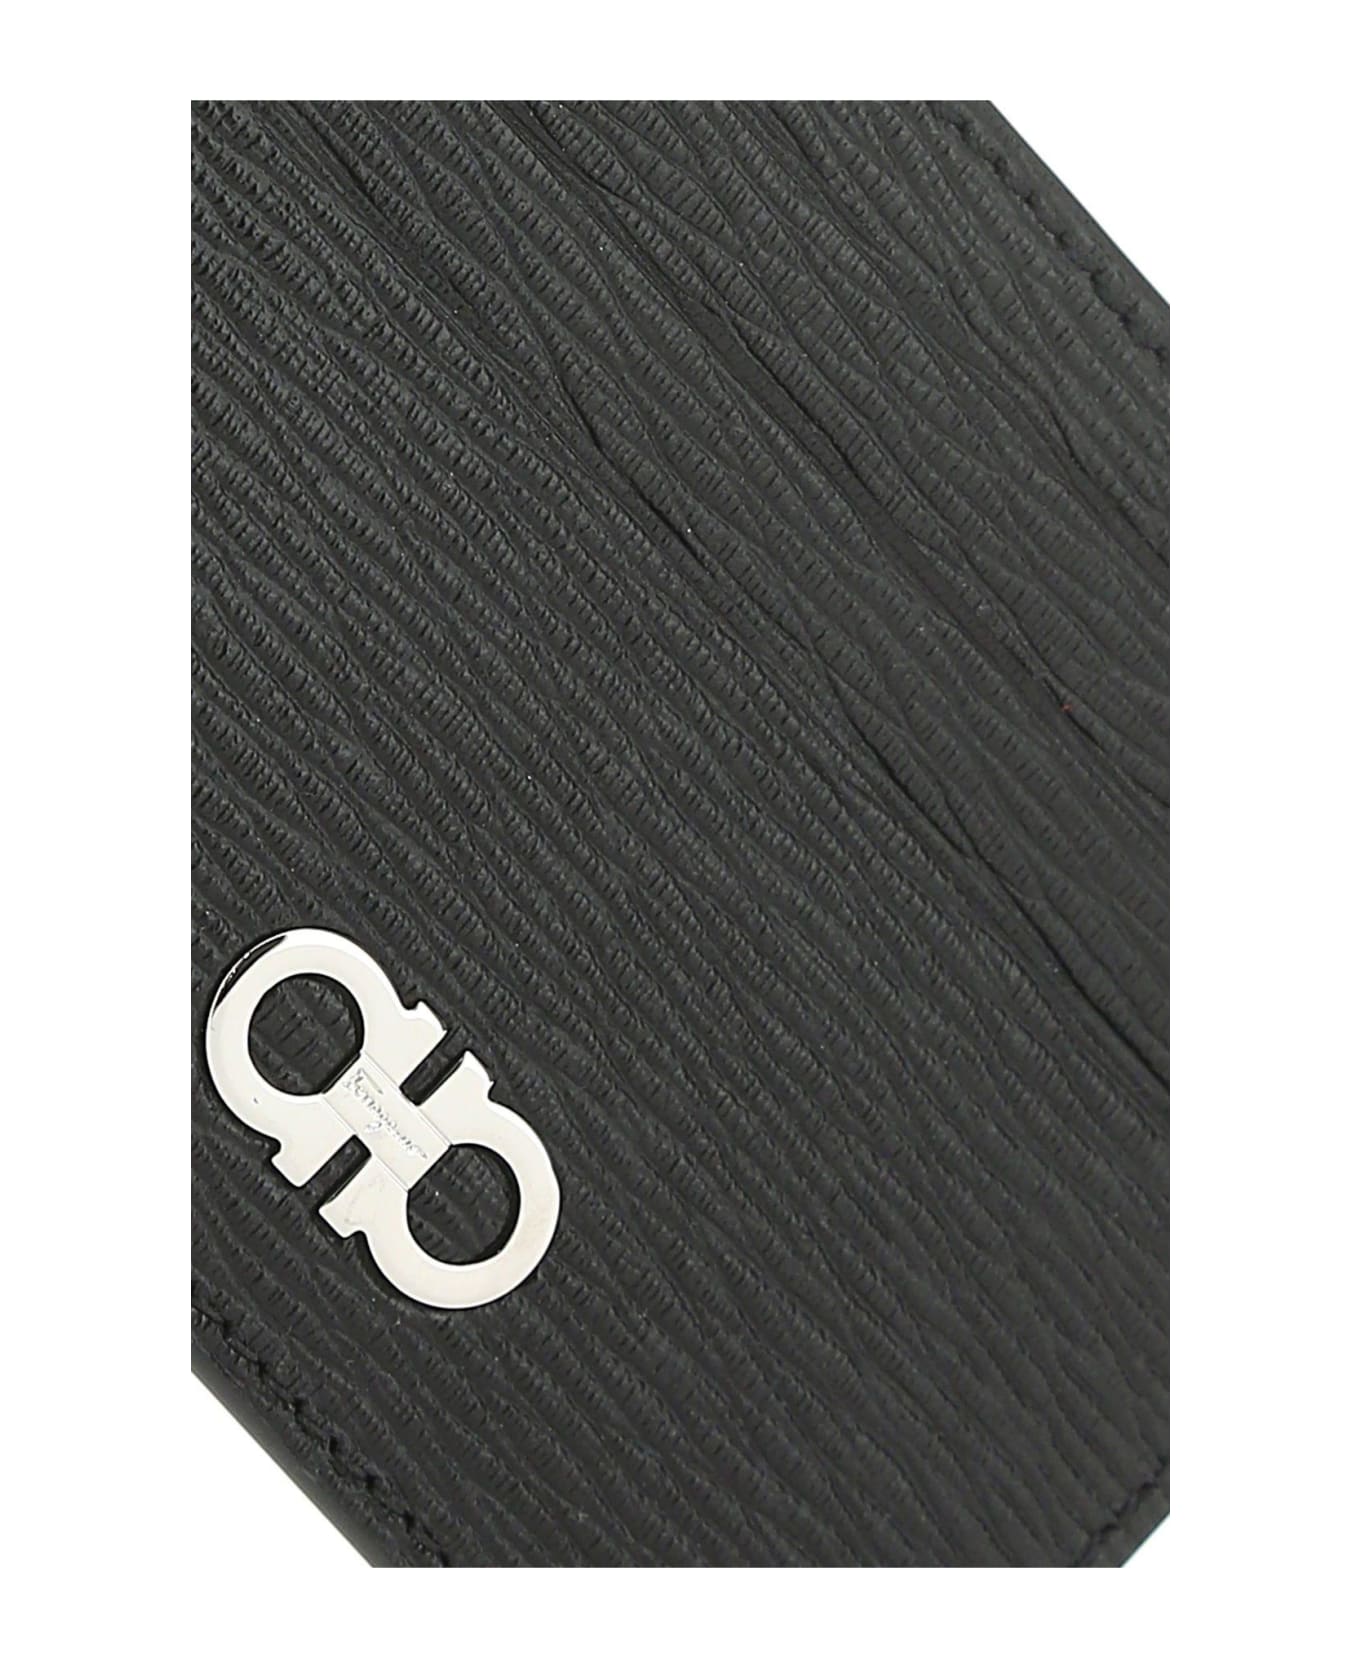 Ferragamo Two-tone Leather Card Holder - Nero/red